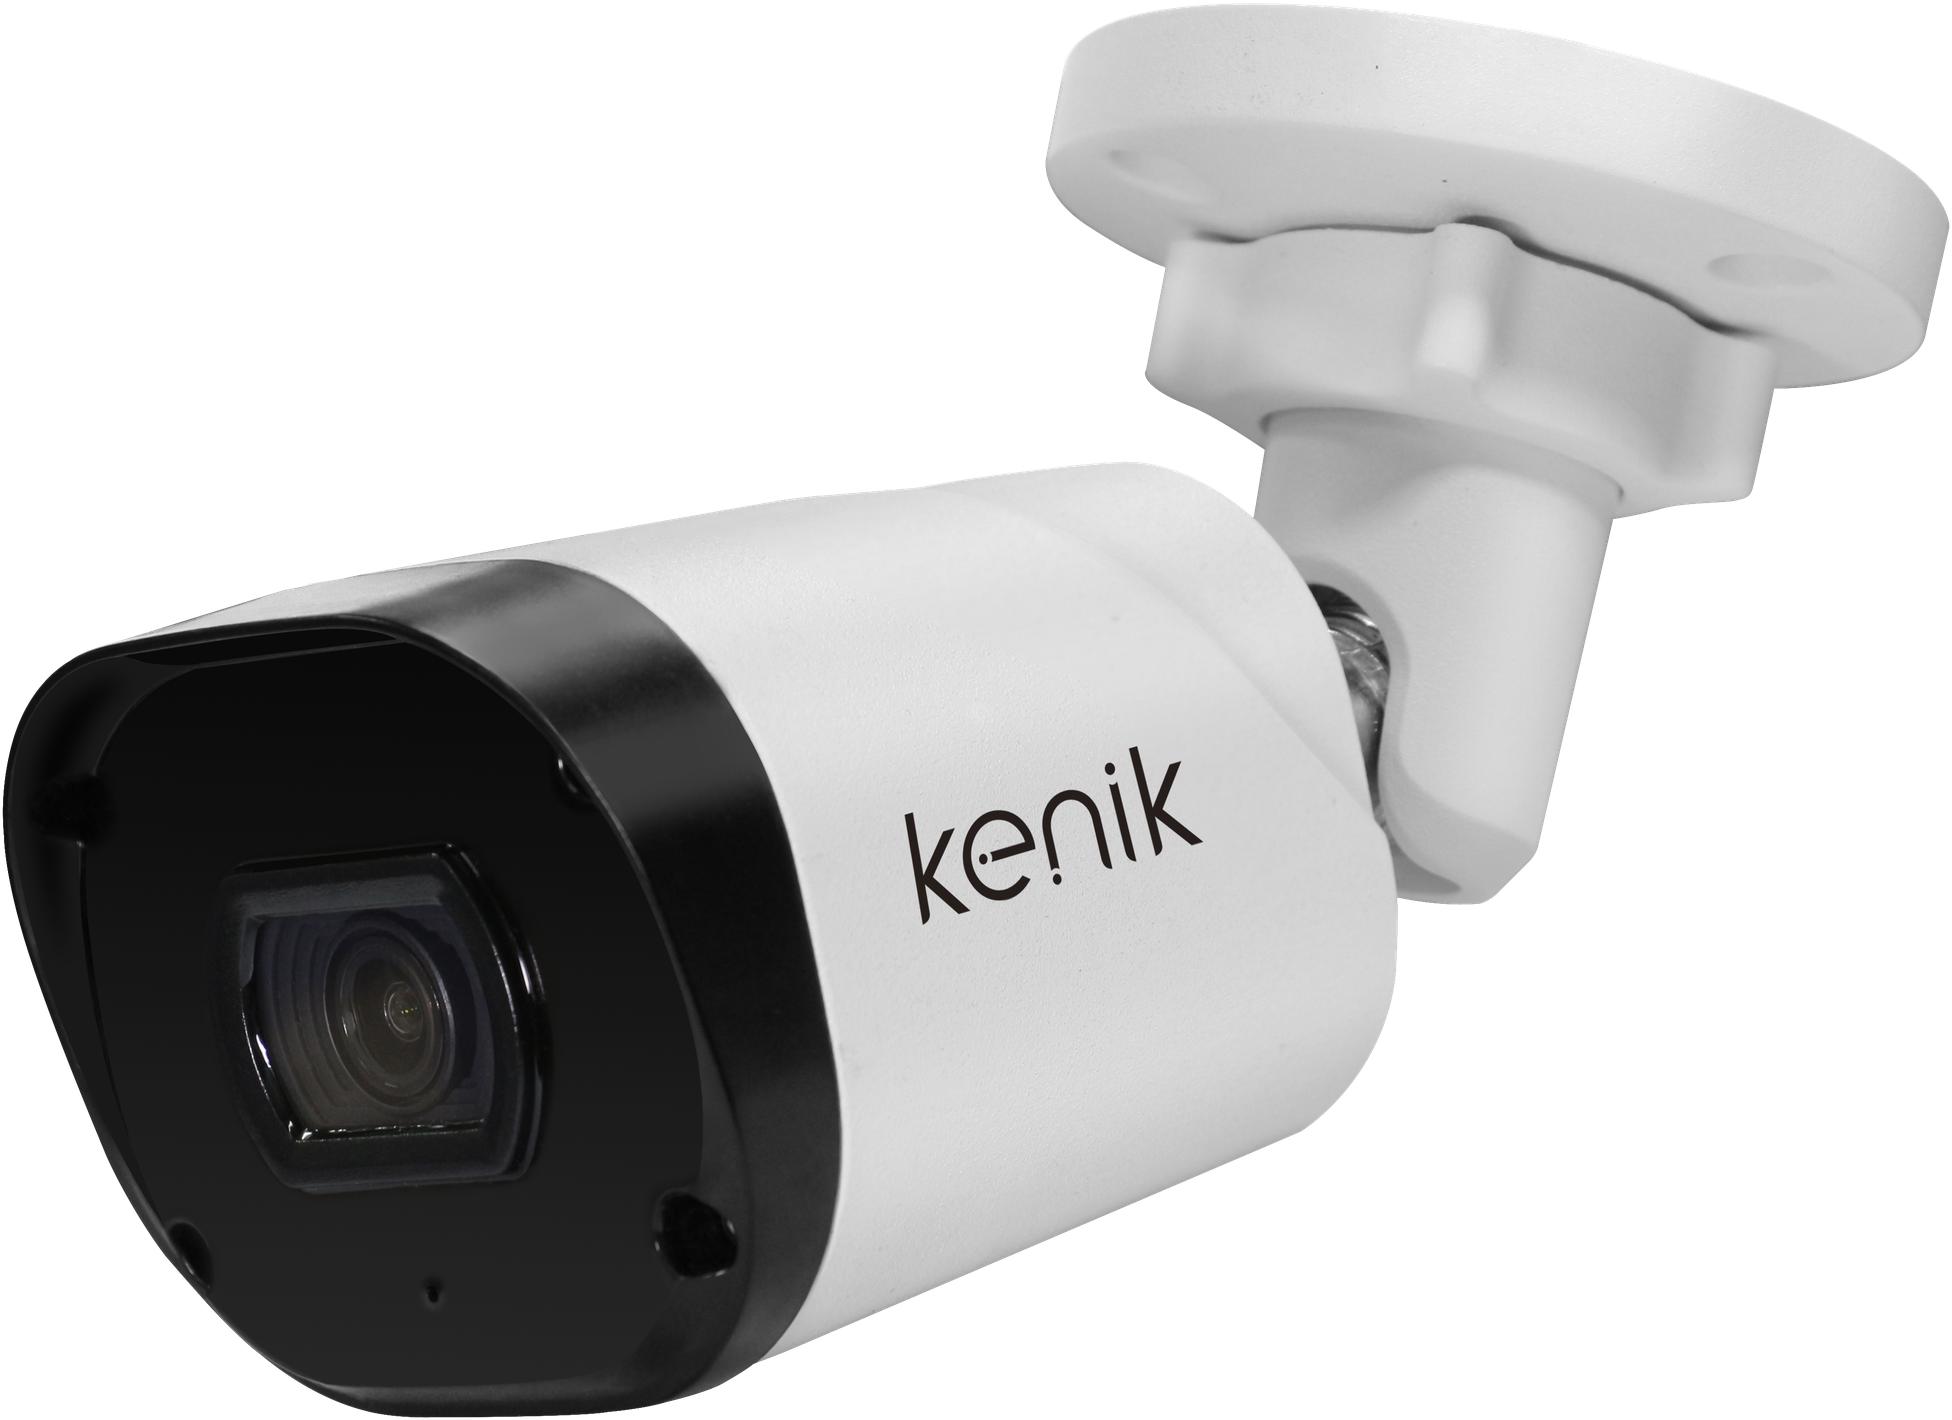 KENIK KG-230TP-L 2MPx - doskonaly wybór do systemu monitoringu wymagającego obrazu najwyższej jakości!